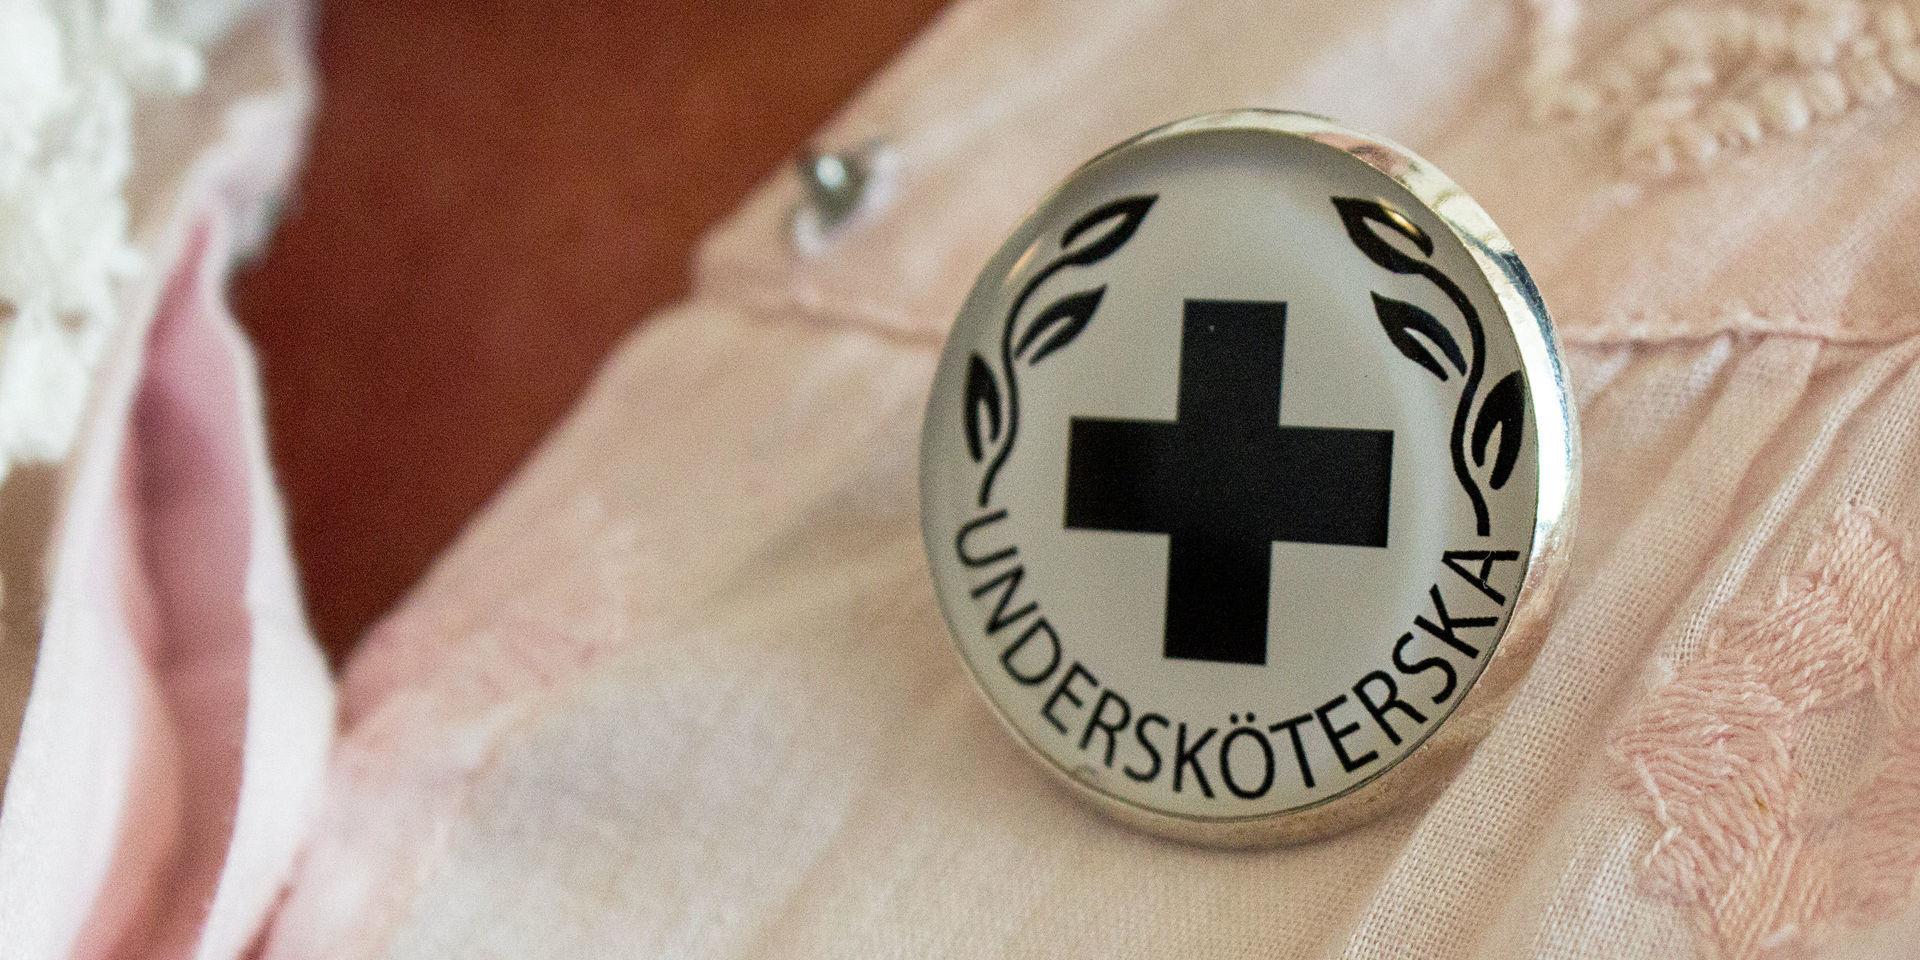 ”Jag känner enorm stolthet och oerhört stor respekt för kollegor, patienter och arbetsplats”, skriver signaturen ”Johansson” om arbetet som undersköterska.